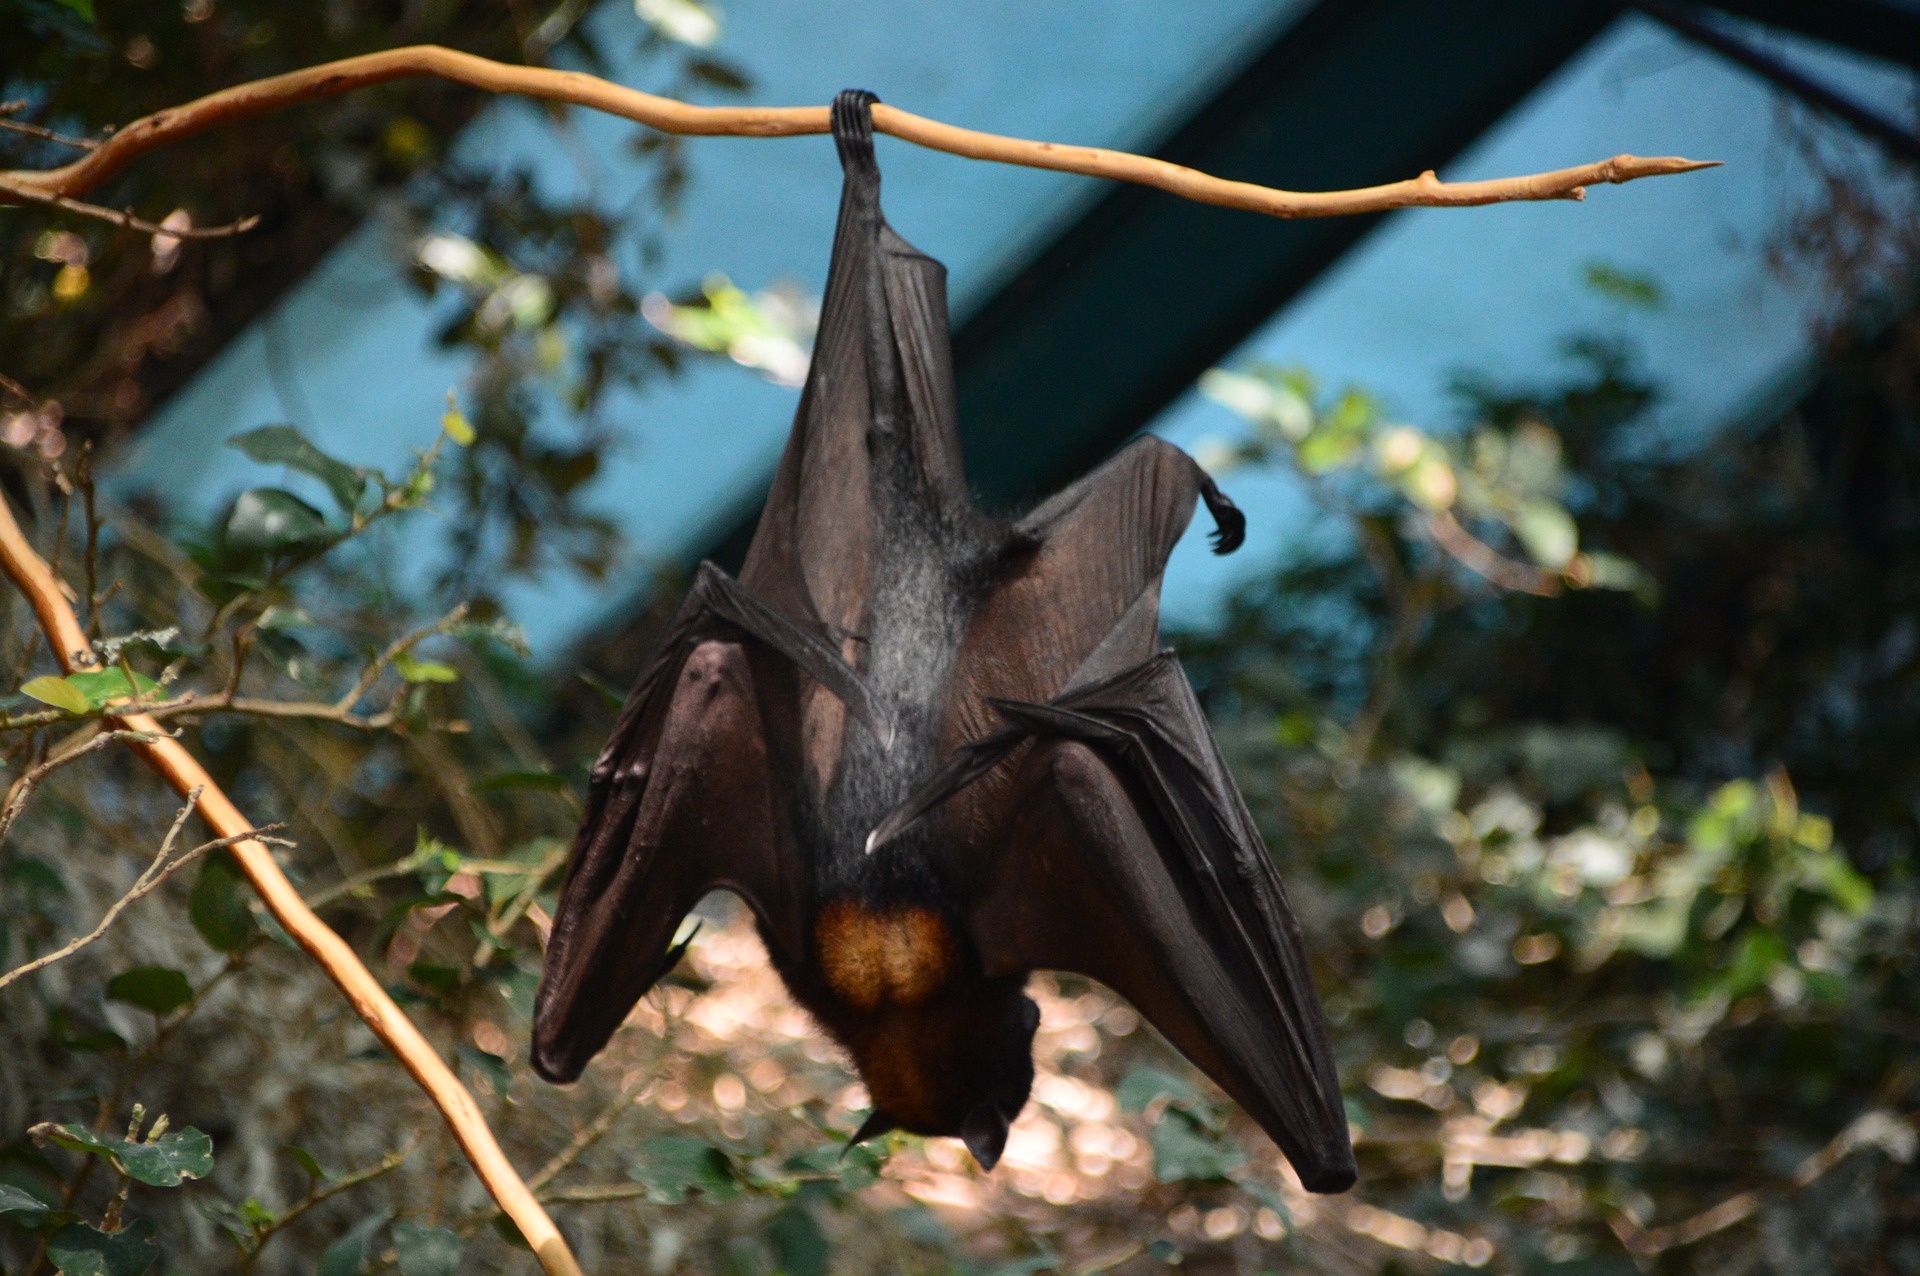 Bat hanging upside down